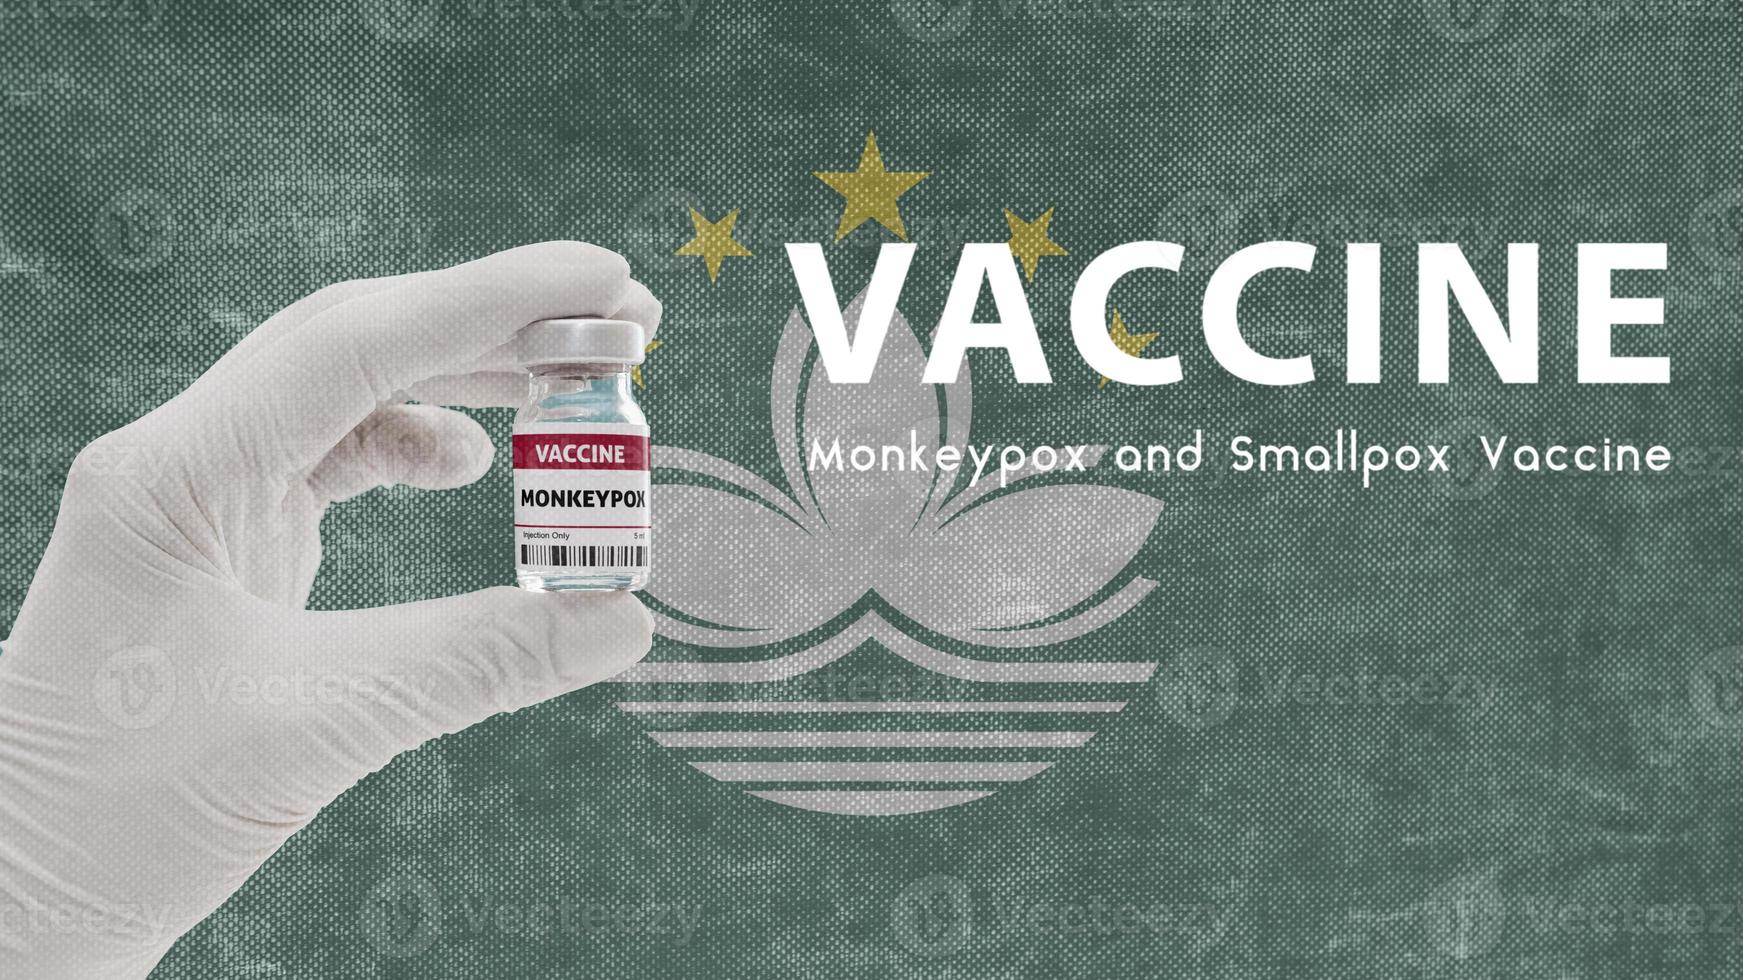 vaccin apenpokken en pokken, apenpokken pandemisch virus, vaccinatie in macau voor apenpokken afbeelding heeft ruis, granulariteit en compressie-artefacten foto